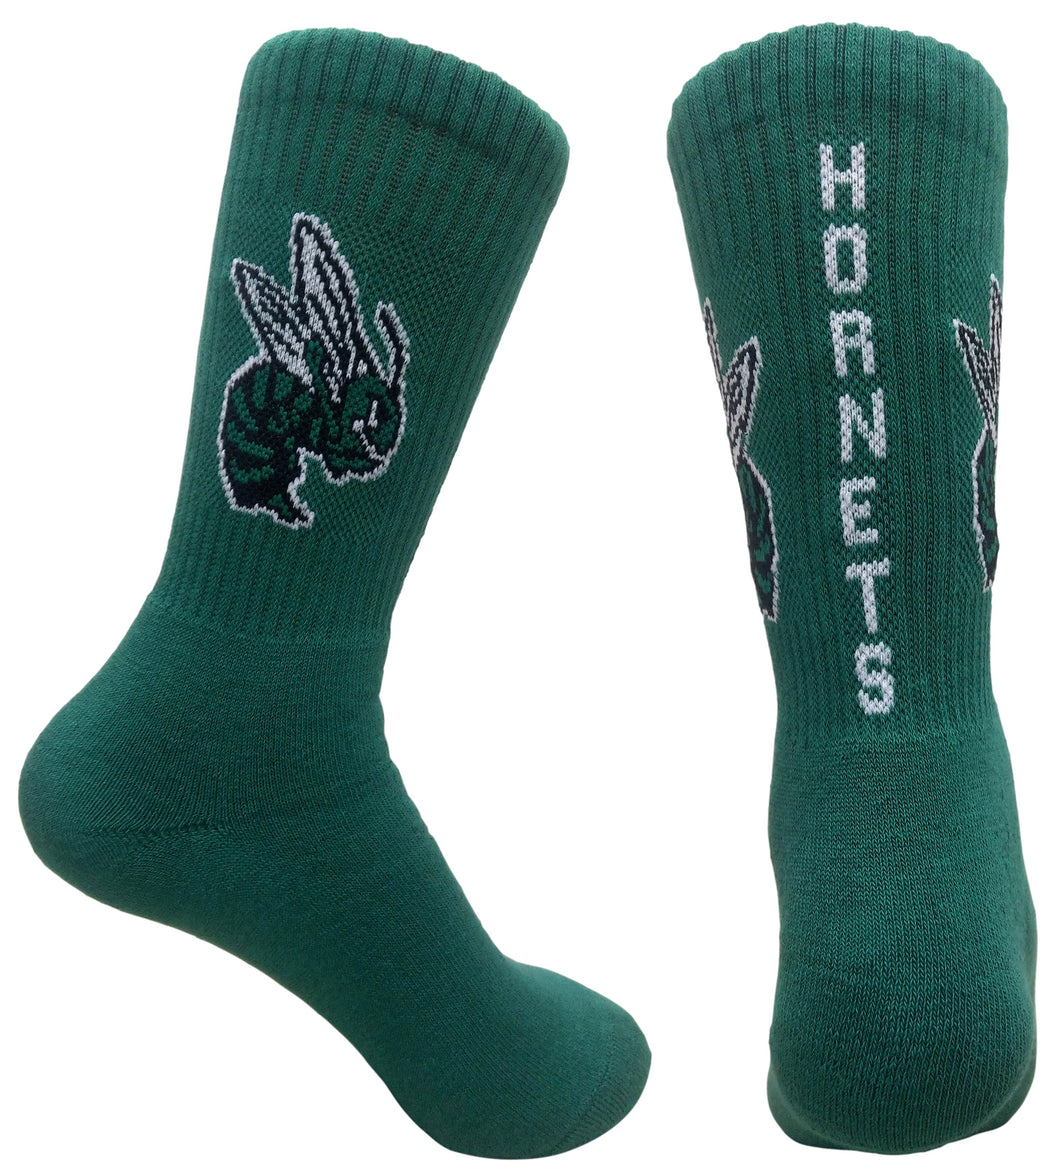 Highland Hornets Socks